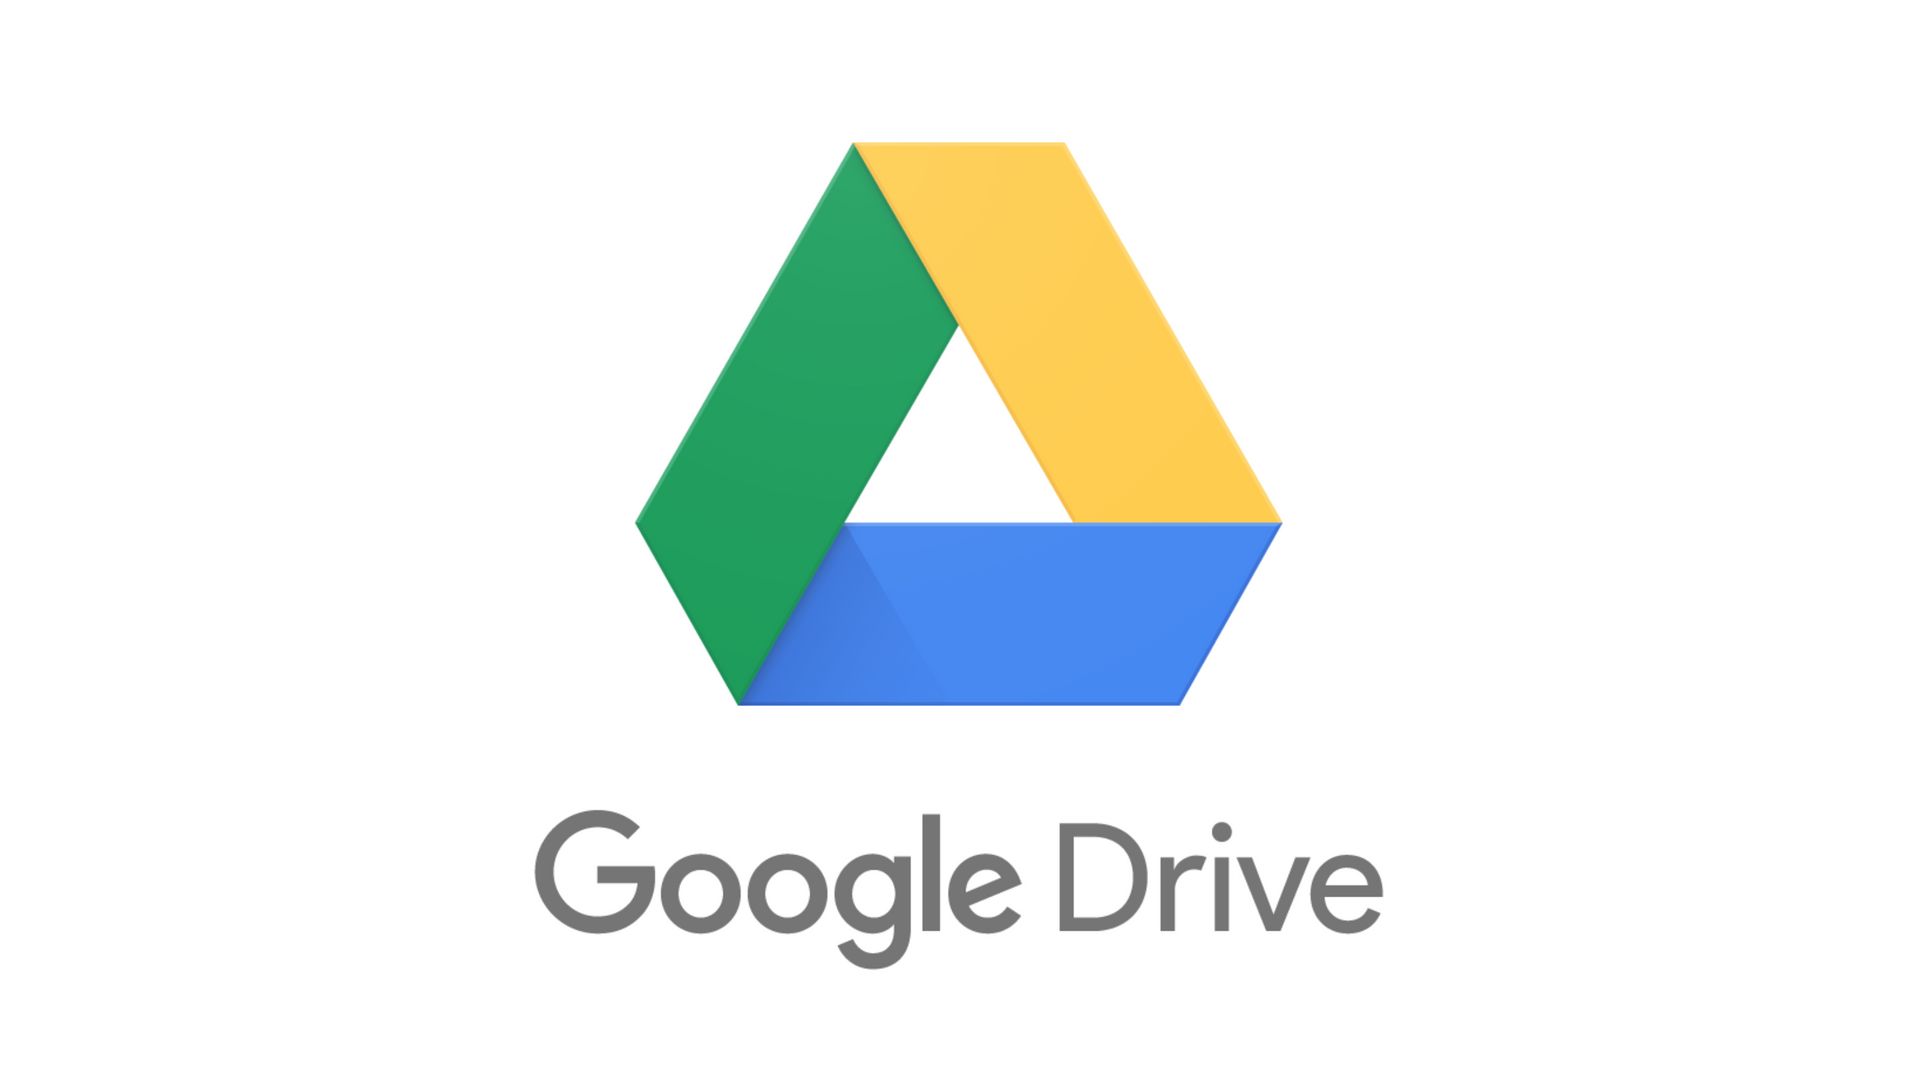 Google Drive s’apprête à franchir le cap du milliard d’utilisateurs